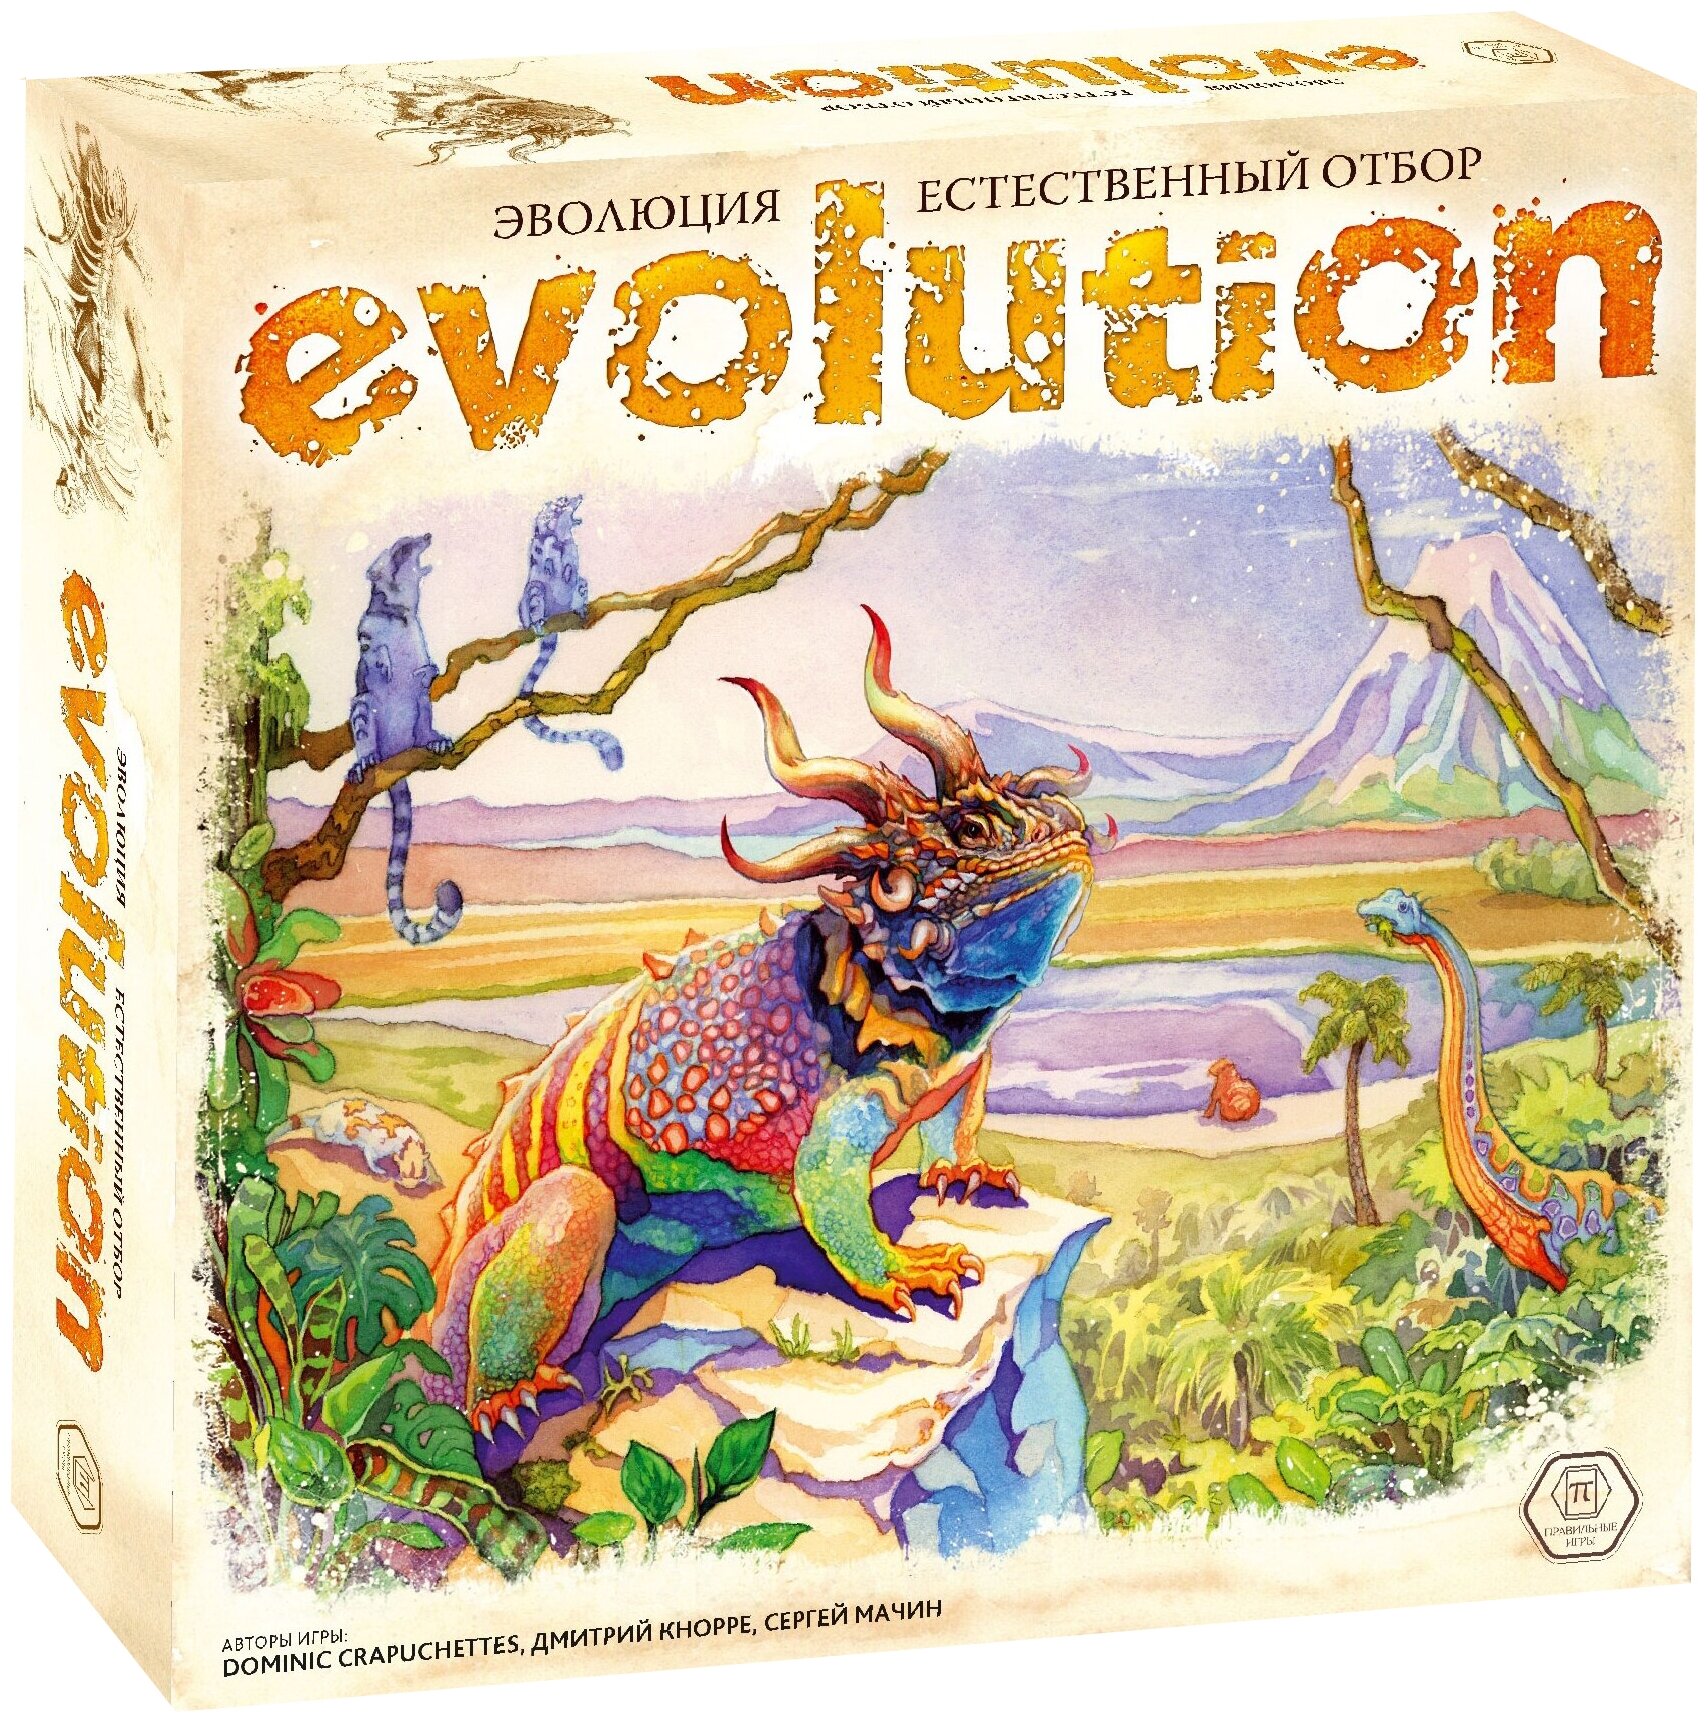 Настольная игра правильные игры 13-03-01 Эволюция. Естественный отбор